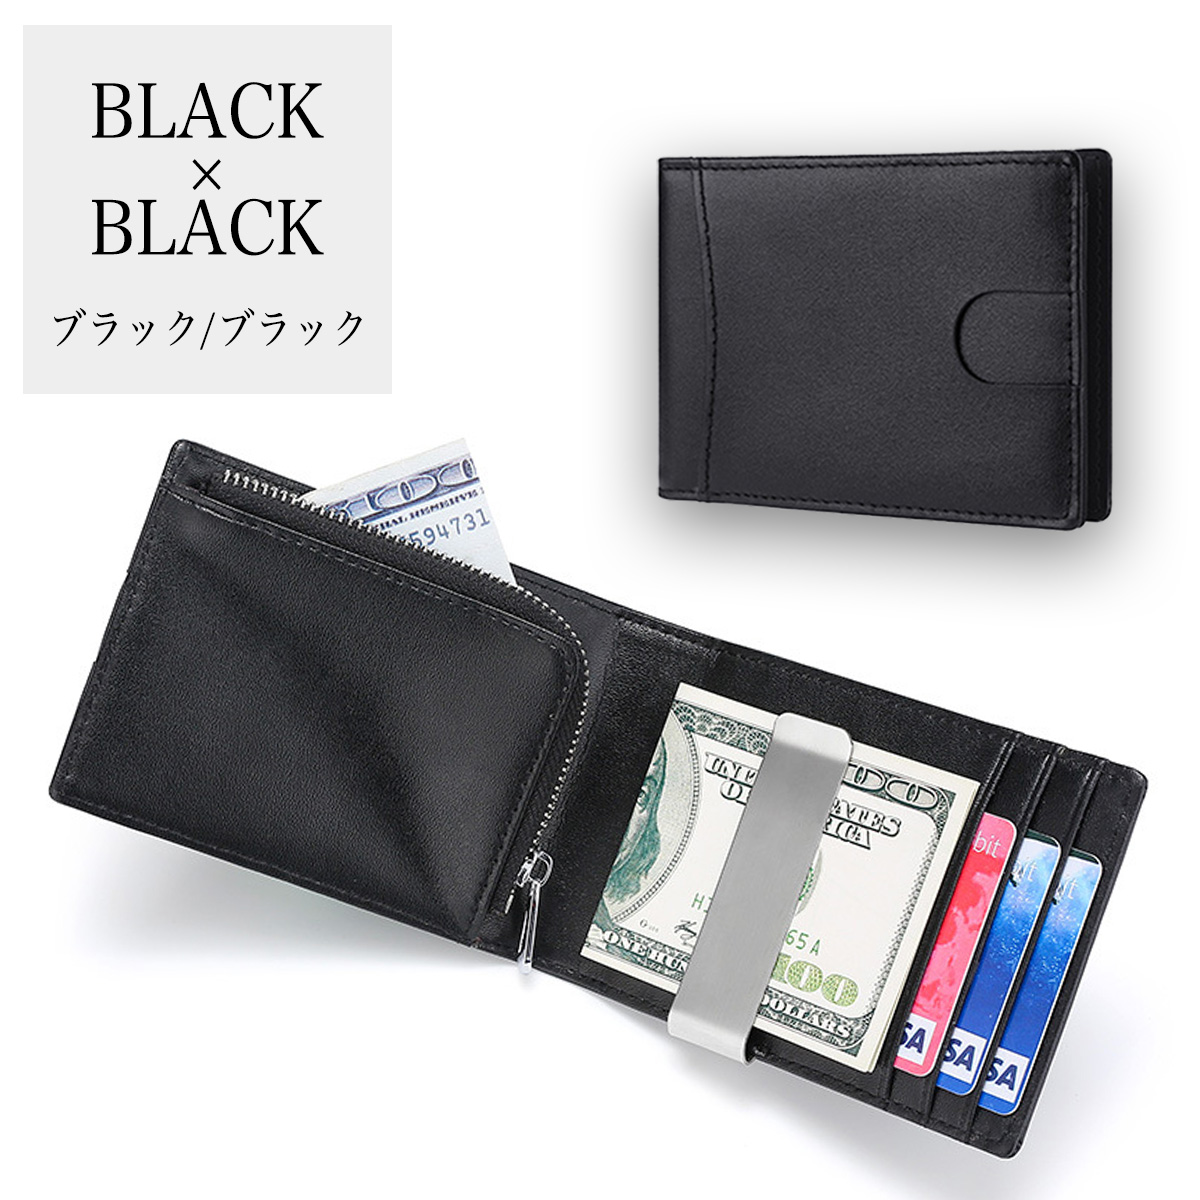 マネークリップ 小銭入れ付き 本革 二つ折り財布 メンズ カードケース レザー